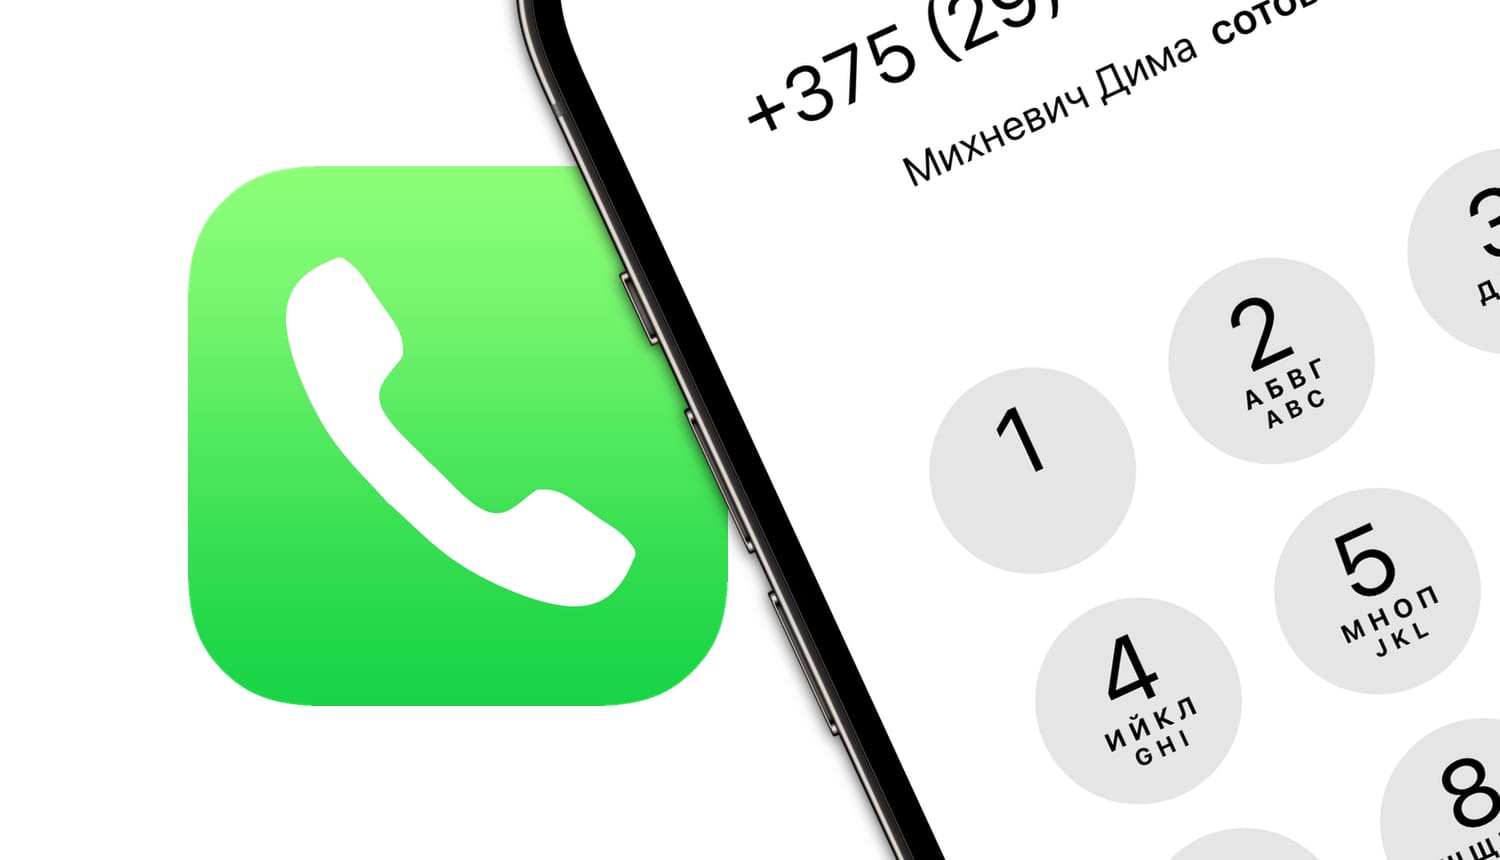 Как быстро перезвонить на последний набранный номер на iPhone без открытия вкладки Недавние